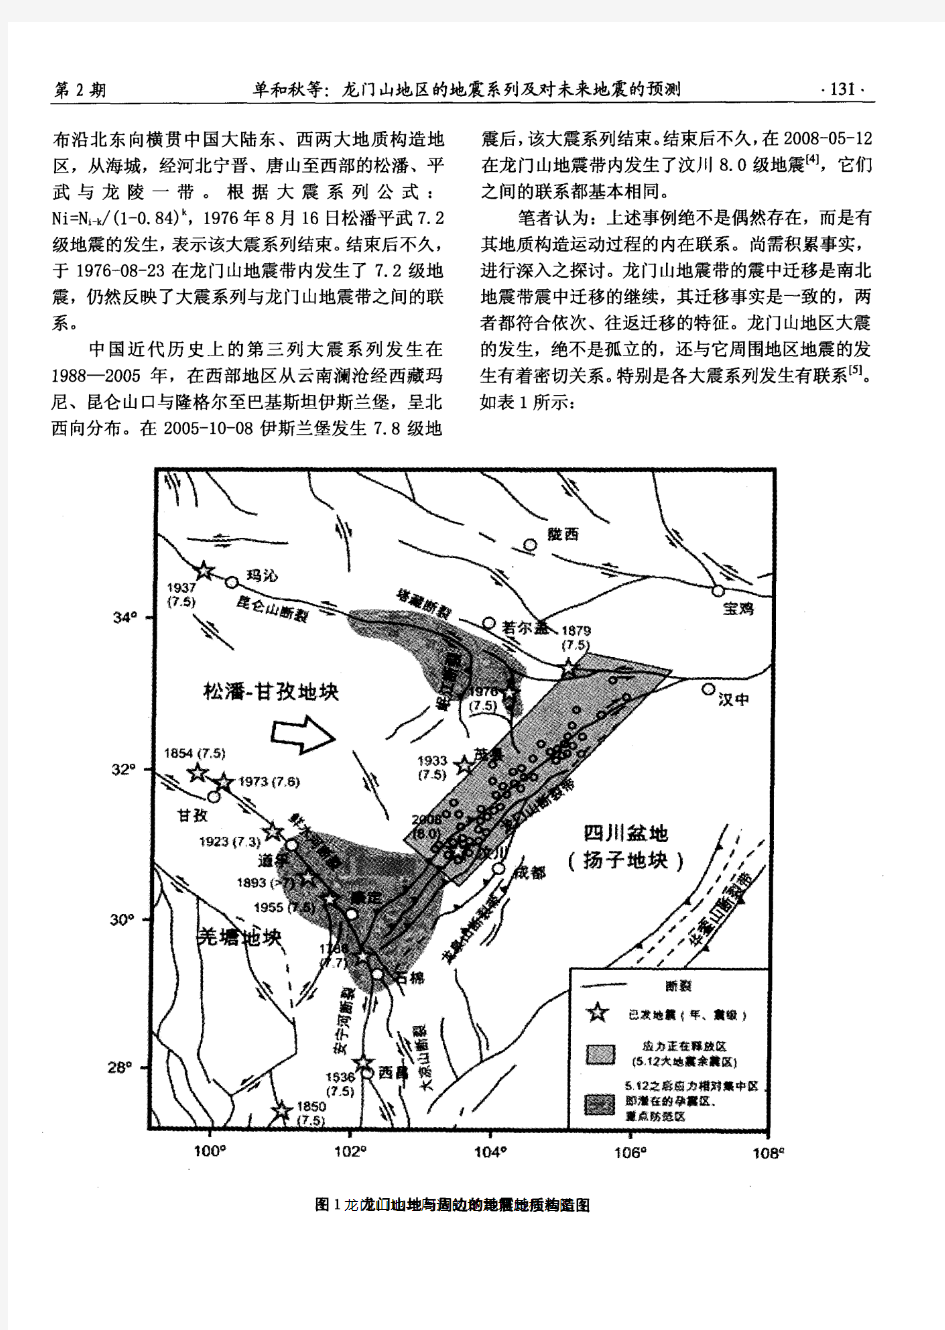 龙门山地区的地震系列及对未来地震的预测